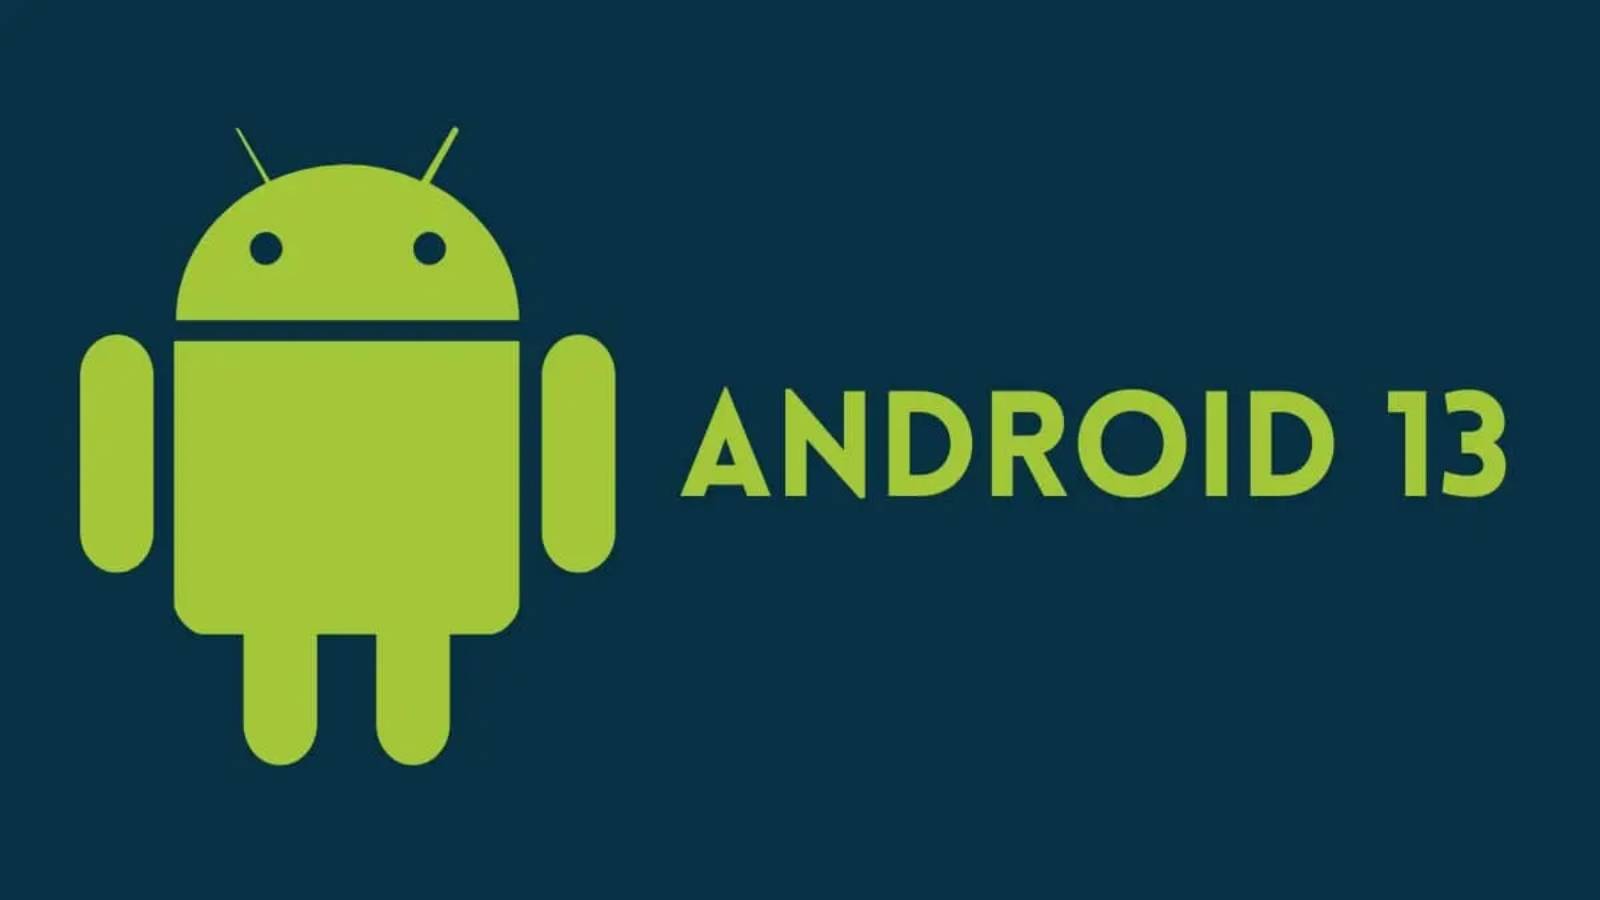 Android 13 Google laver en RADIKAL ændring Vi forventer tilgængelighedstjenester